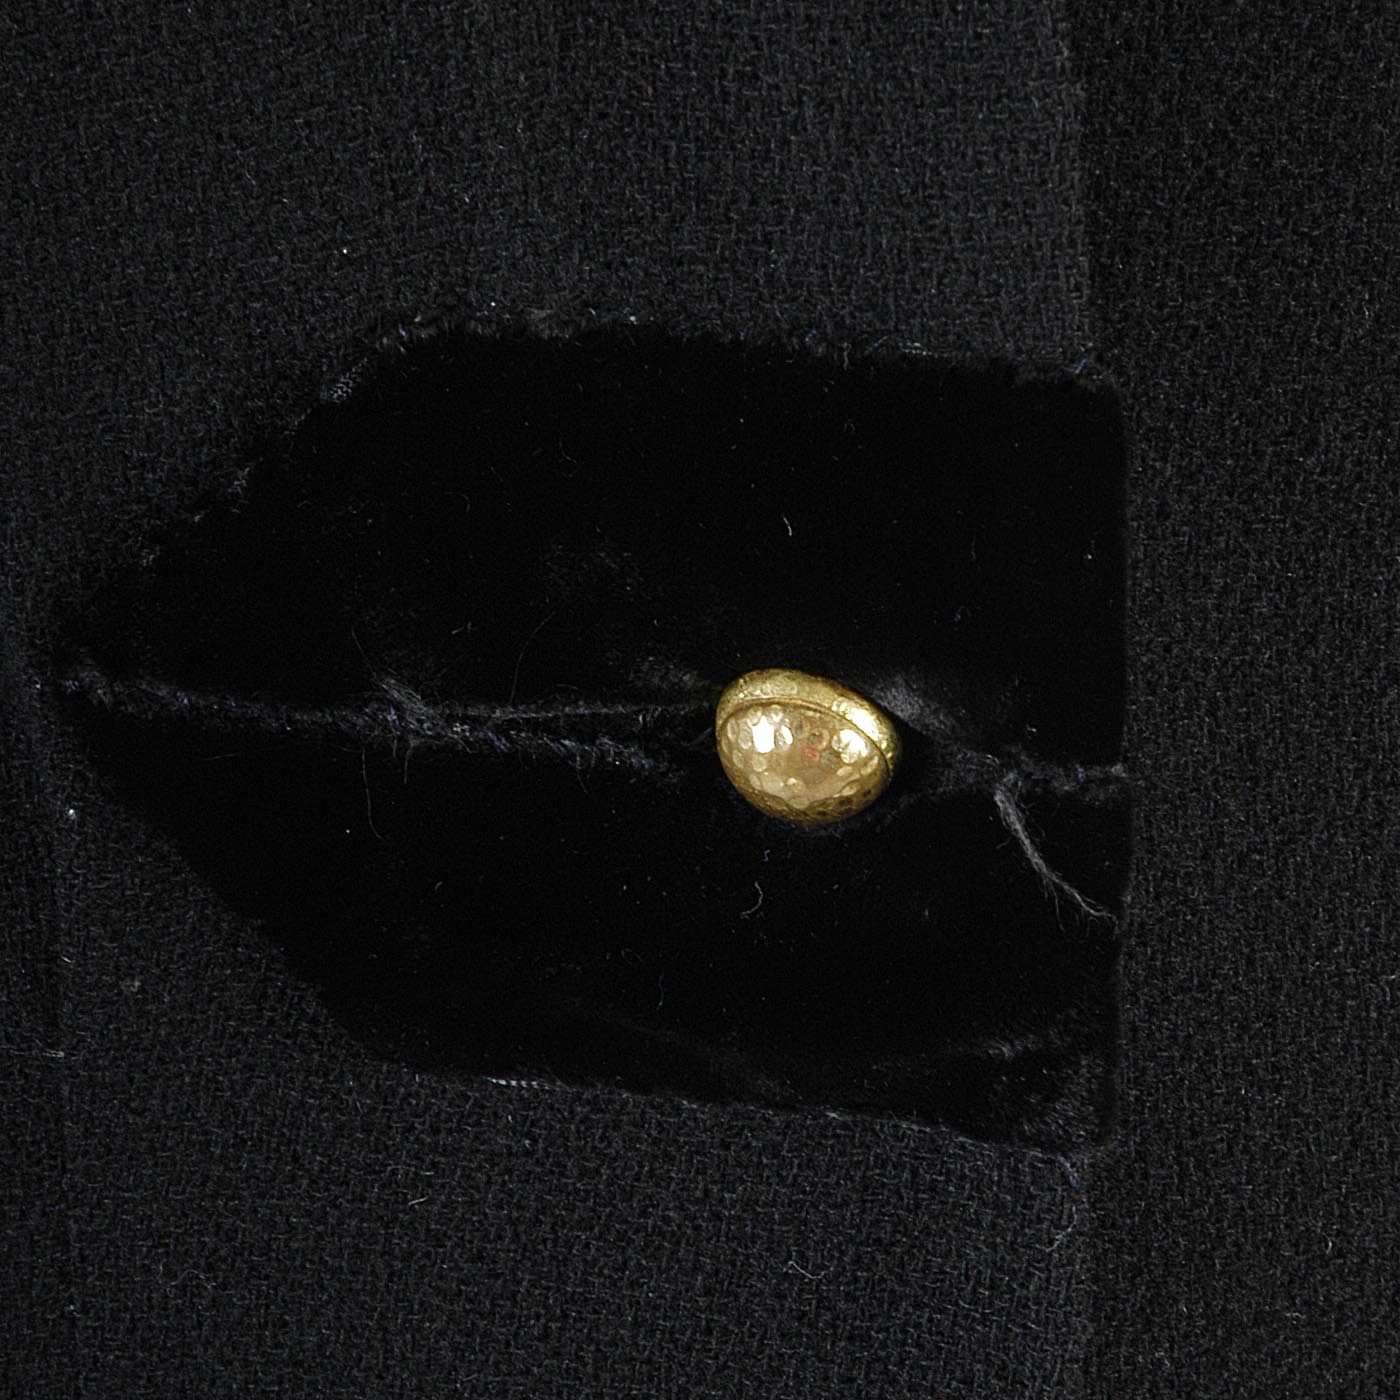 1940s Black Wool Dress with Velvet Detail